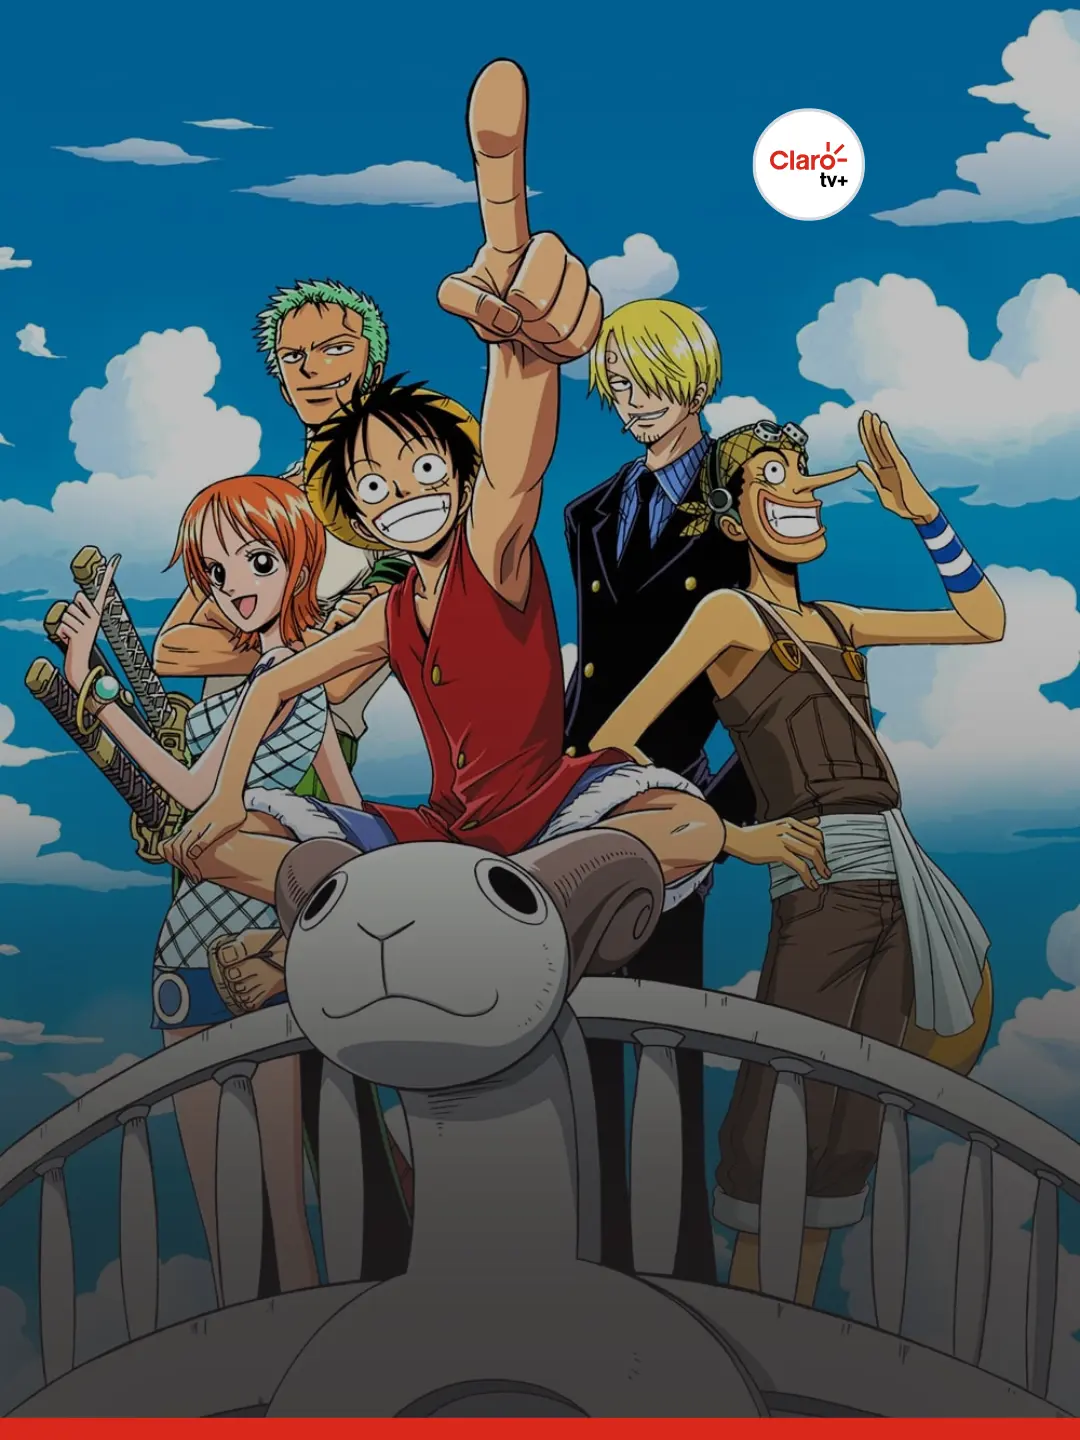 Como convencer alguém a assistir One Piece #onepiece #anime #podcast